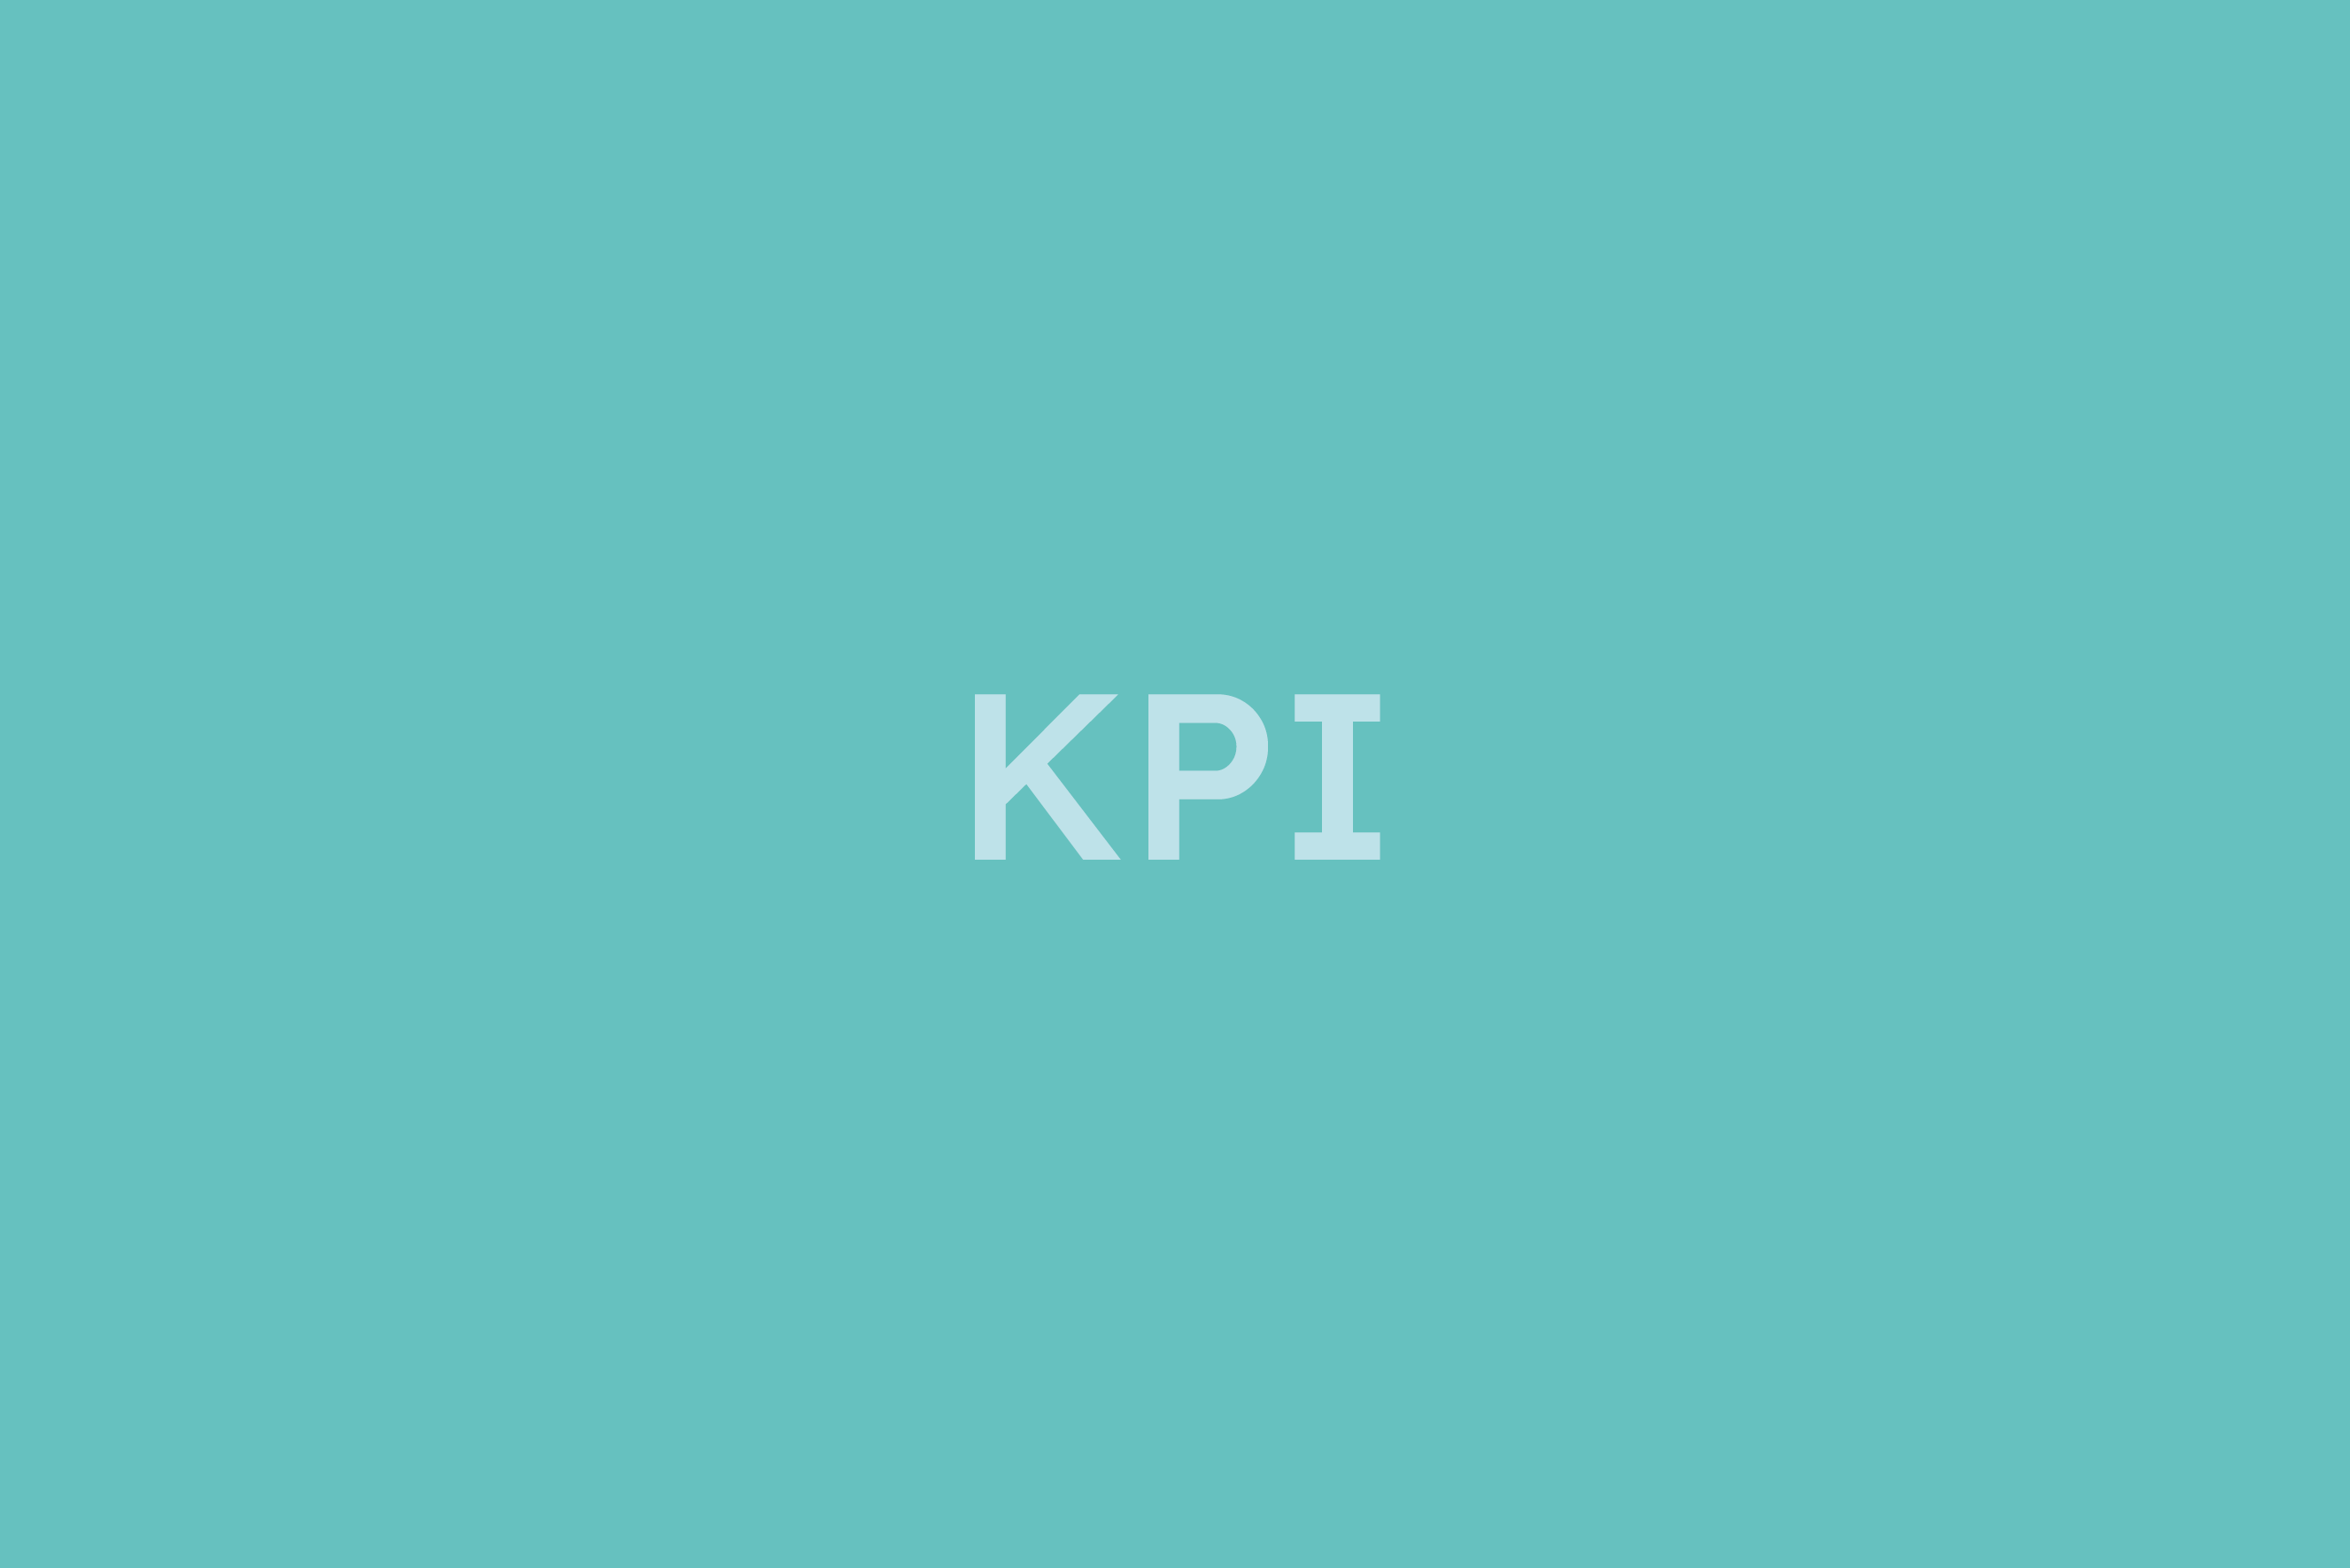 KPI - Key Performance Indicator erklärt im Glossar von Campaign